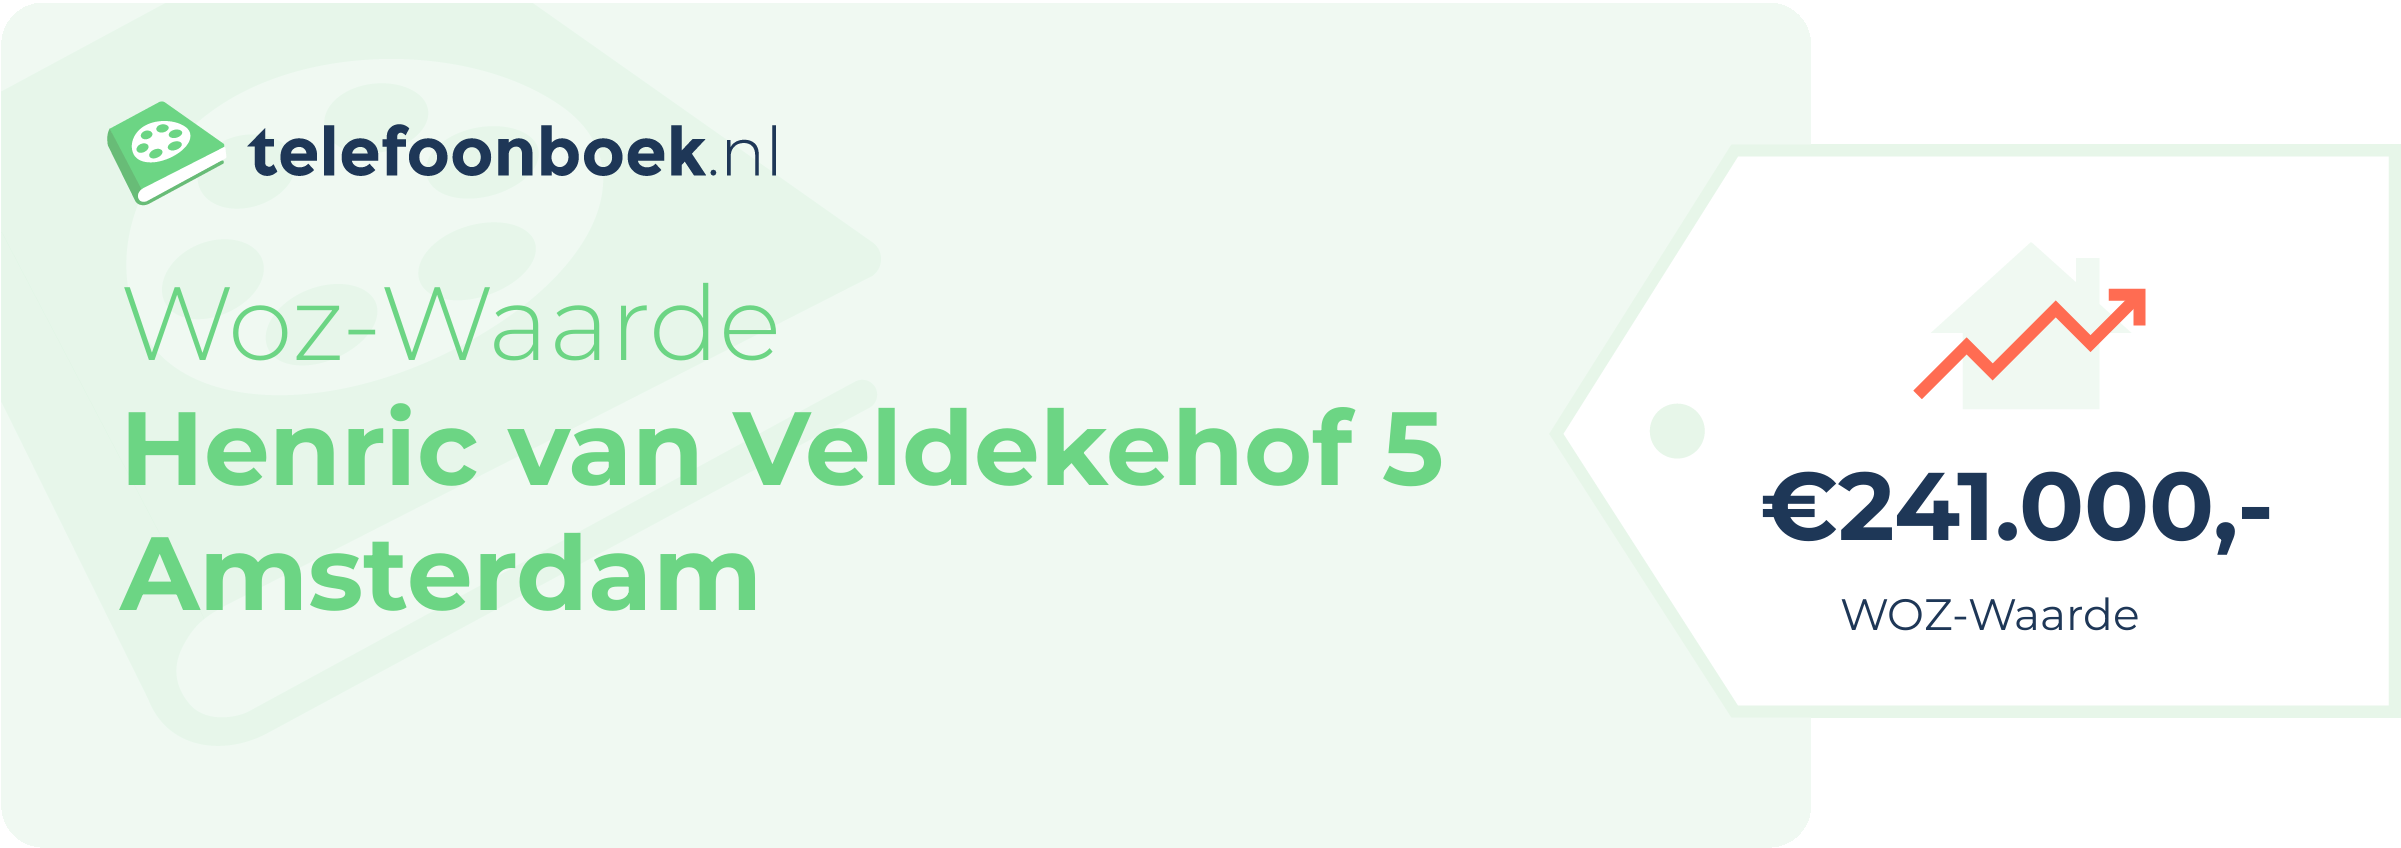 WOZ-waarde Henric Van Veldekehof 5 Amsterdam